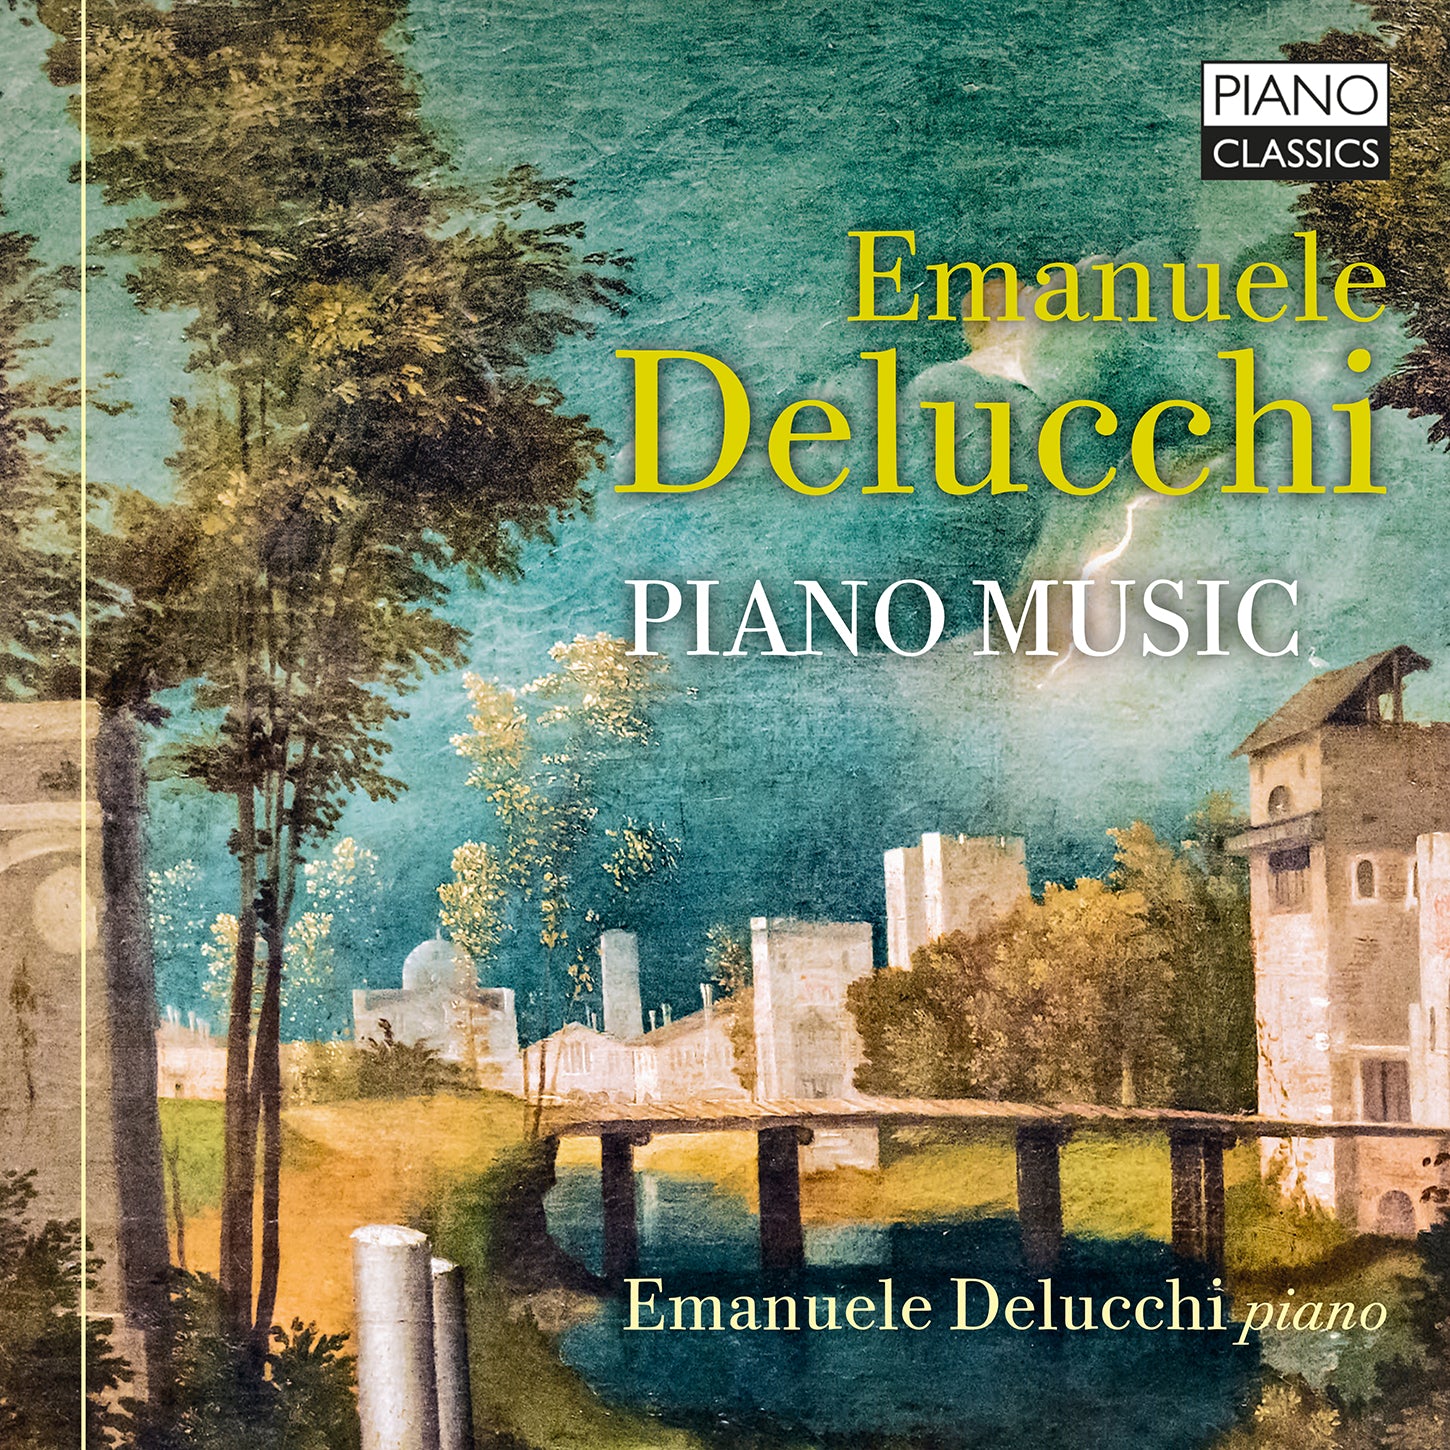 Delucchi, Schubert, Monteverdi, Tárrega: Piano Music / Delucchi